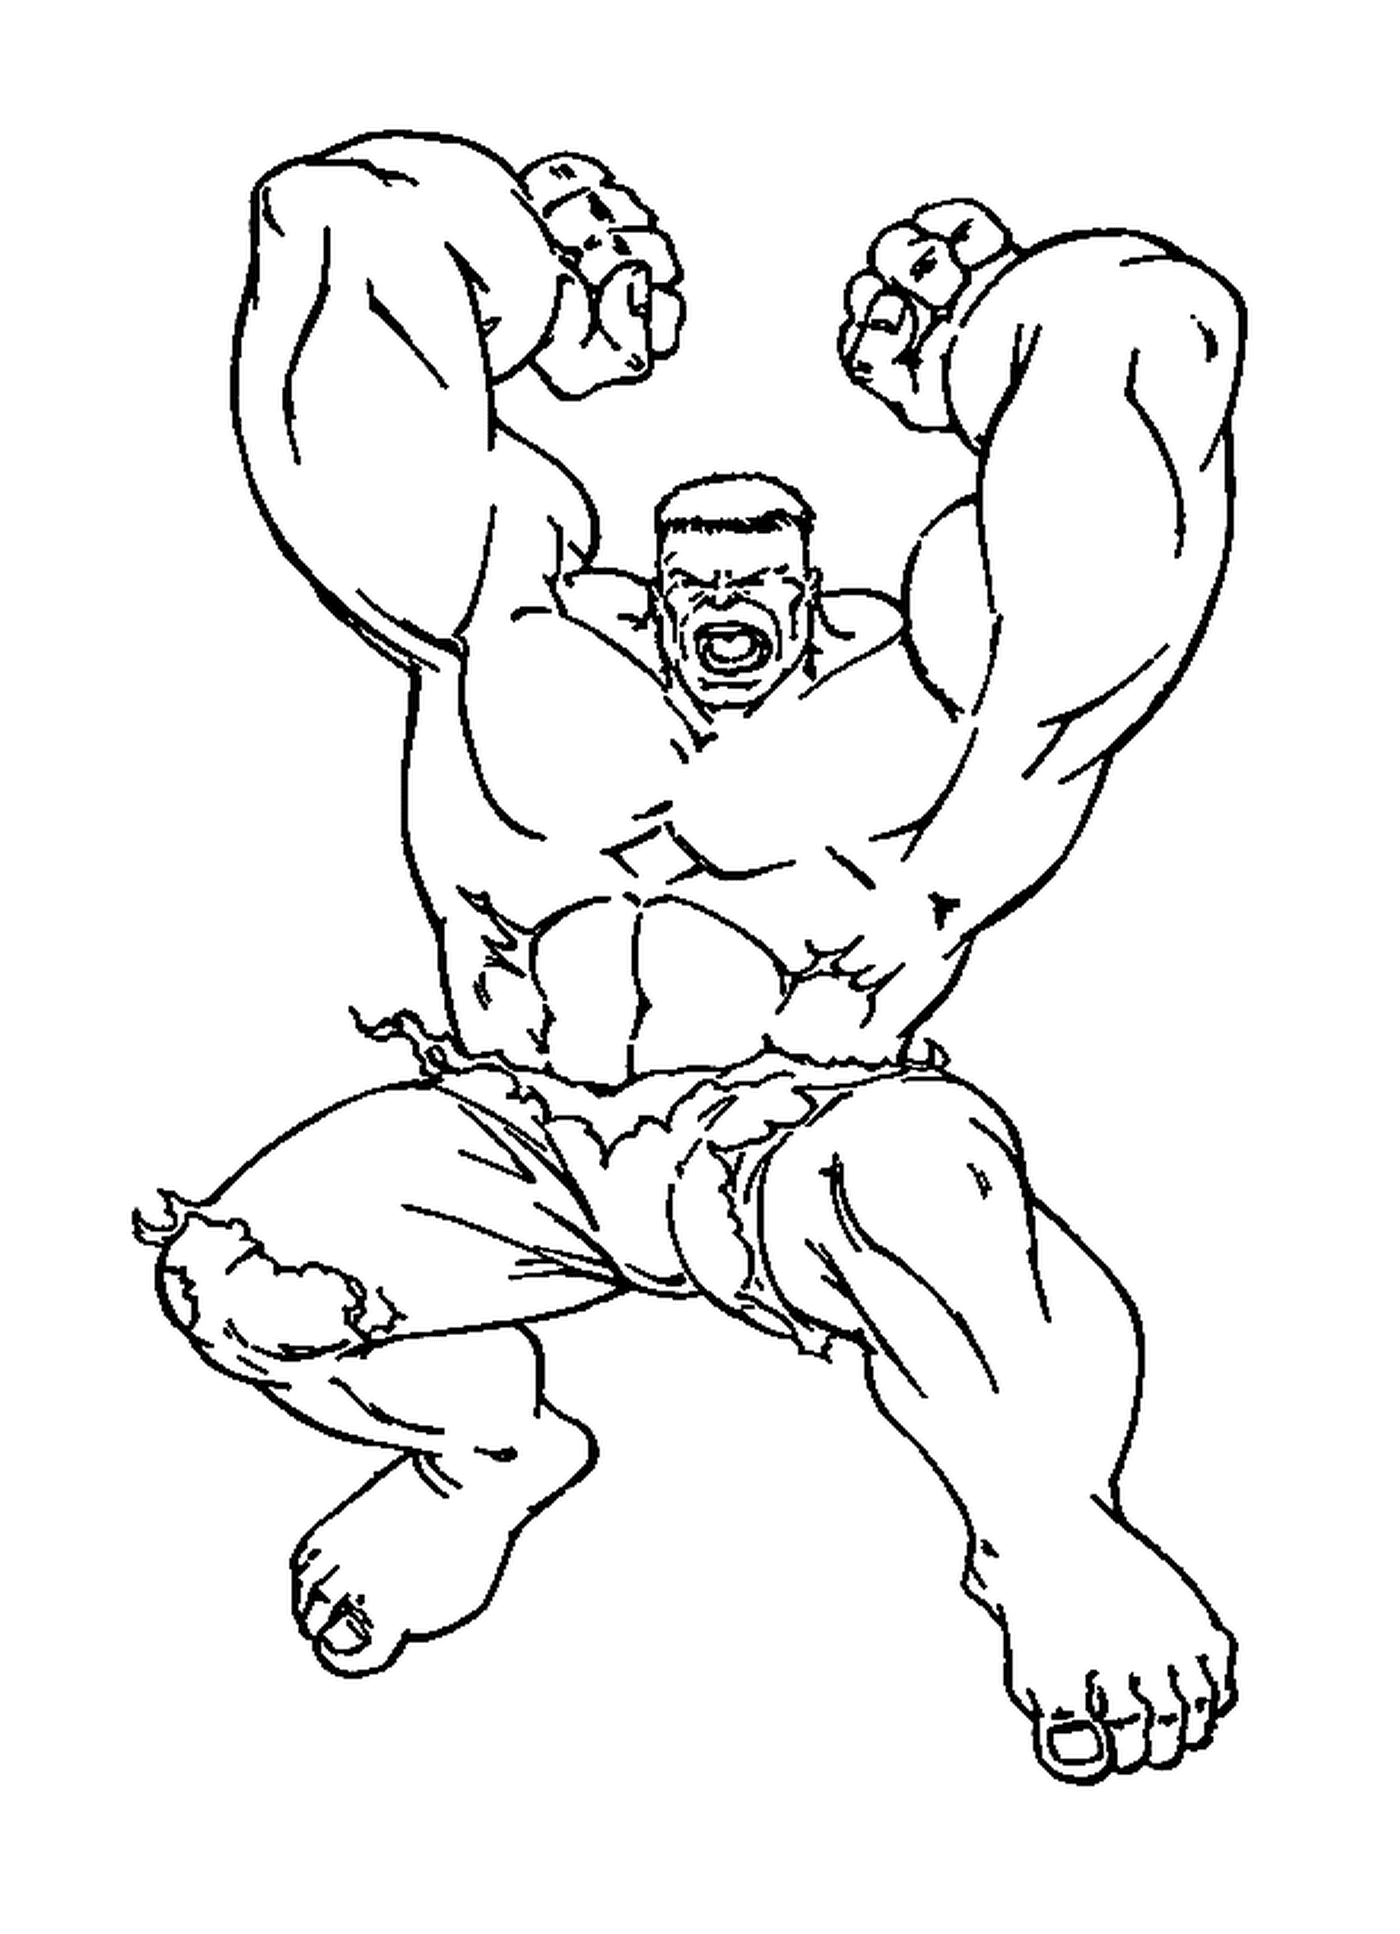  Hulk levantando sus dos brazos 